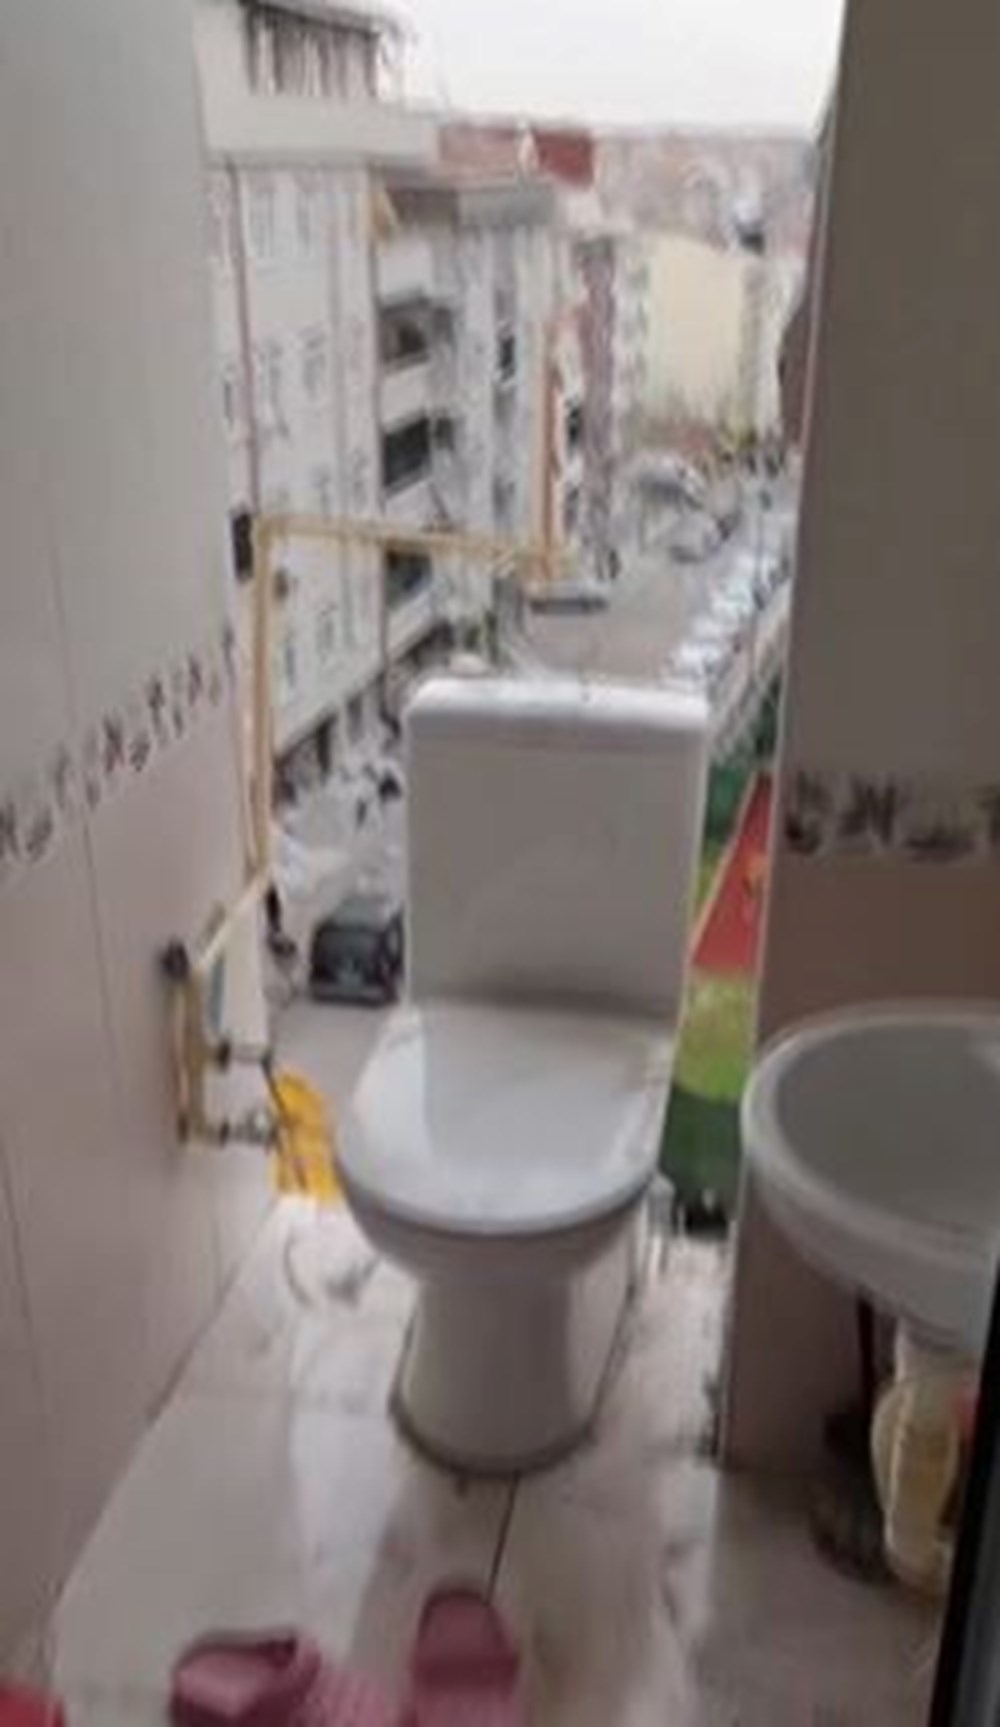 İstanbul'da kentsel dönüşüm! Kepçe yıktı, yan binadaki tuvalet açıkta kaldı - 7